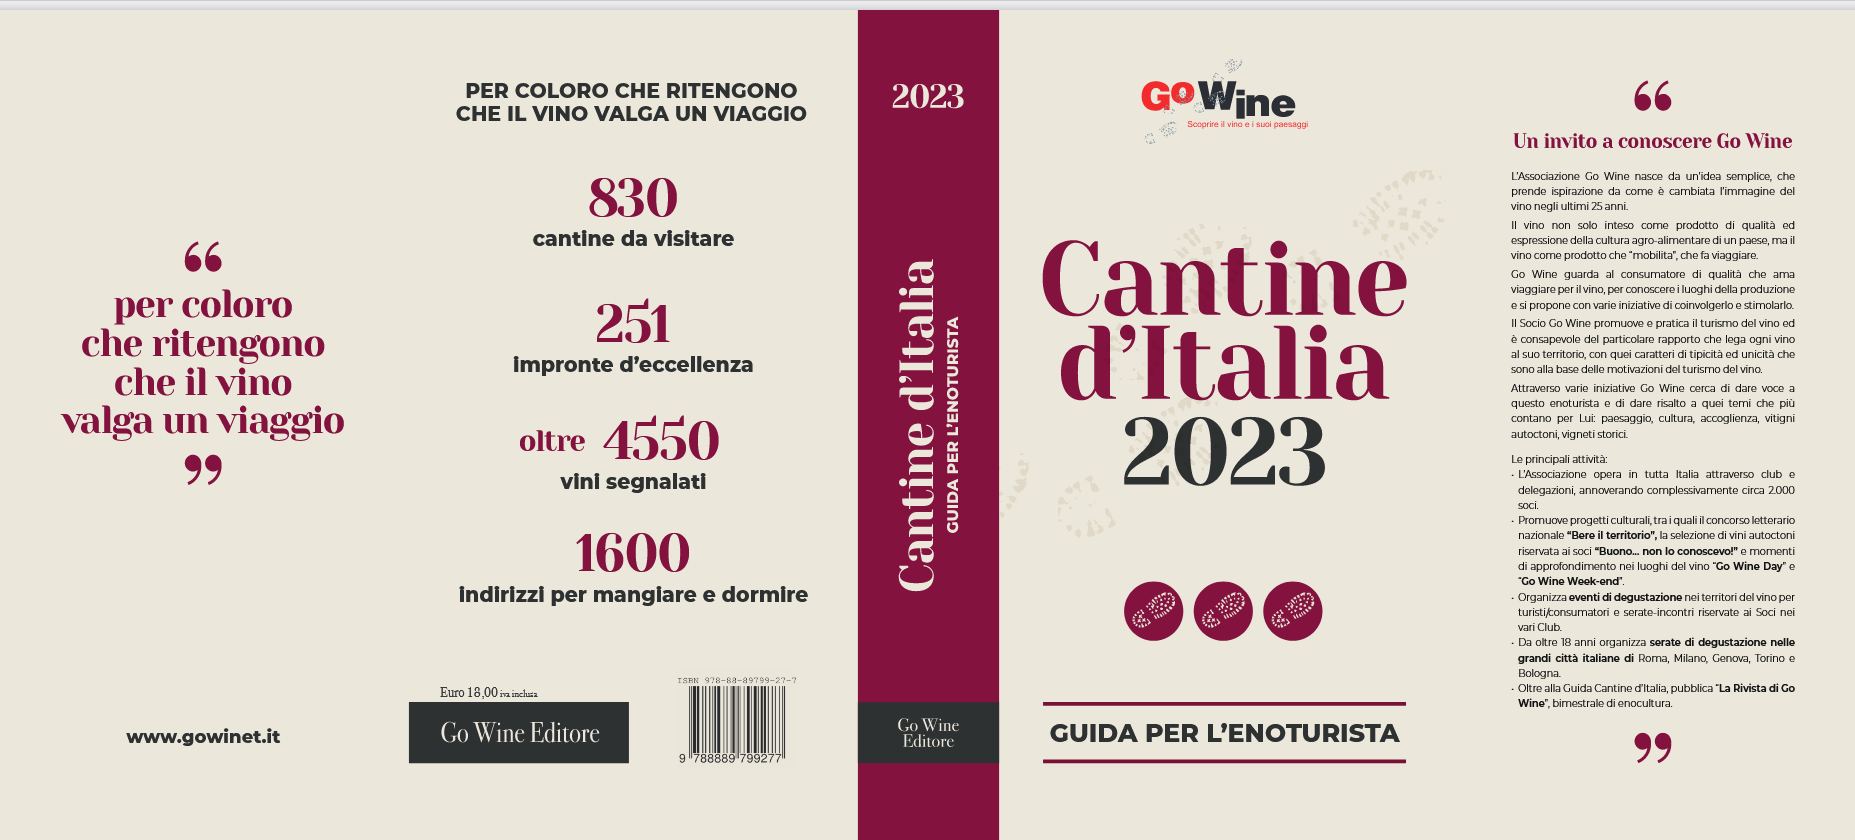 go wine cover guida